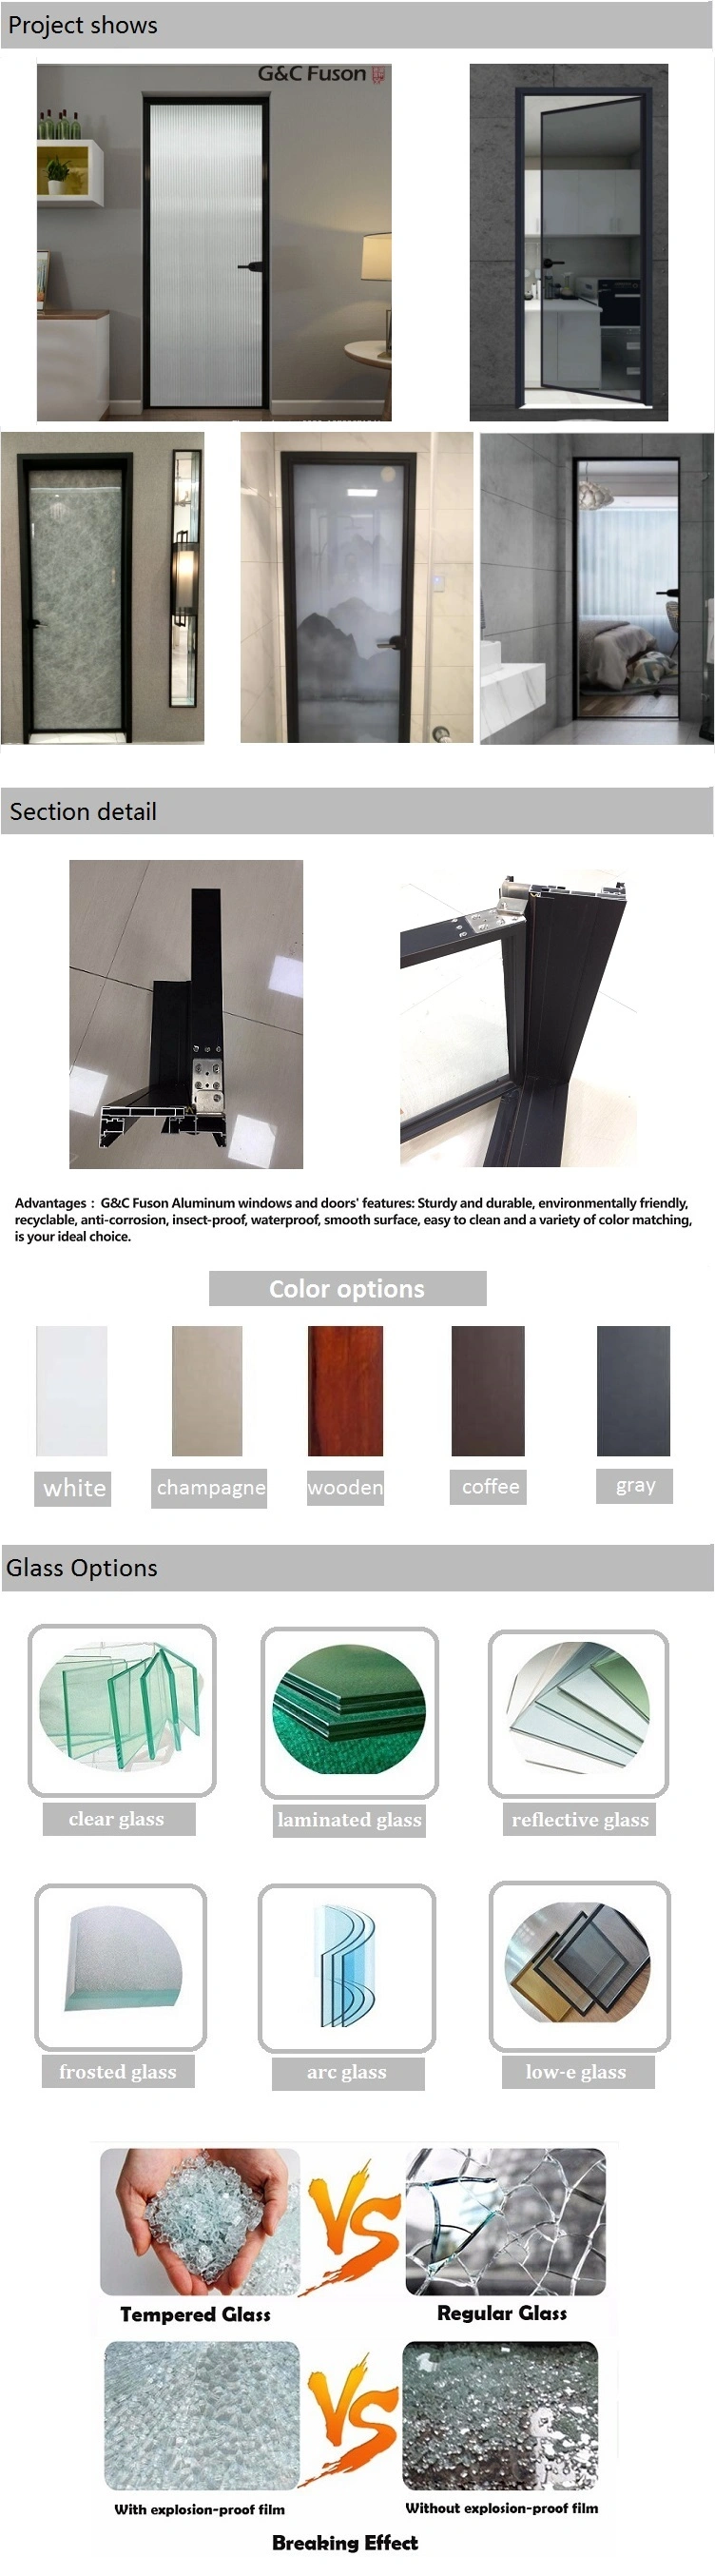 Beautiful Glass Door, Aluminium Profile Black Frame Door, G&C Fuson Swing Door